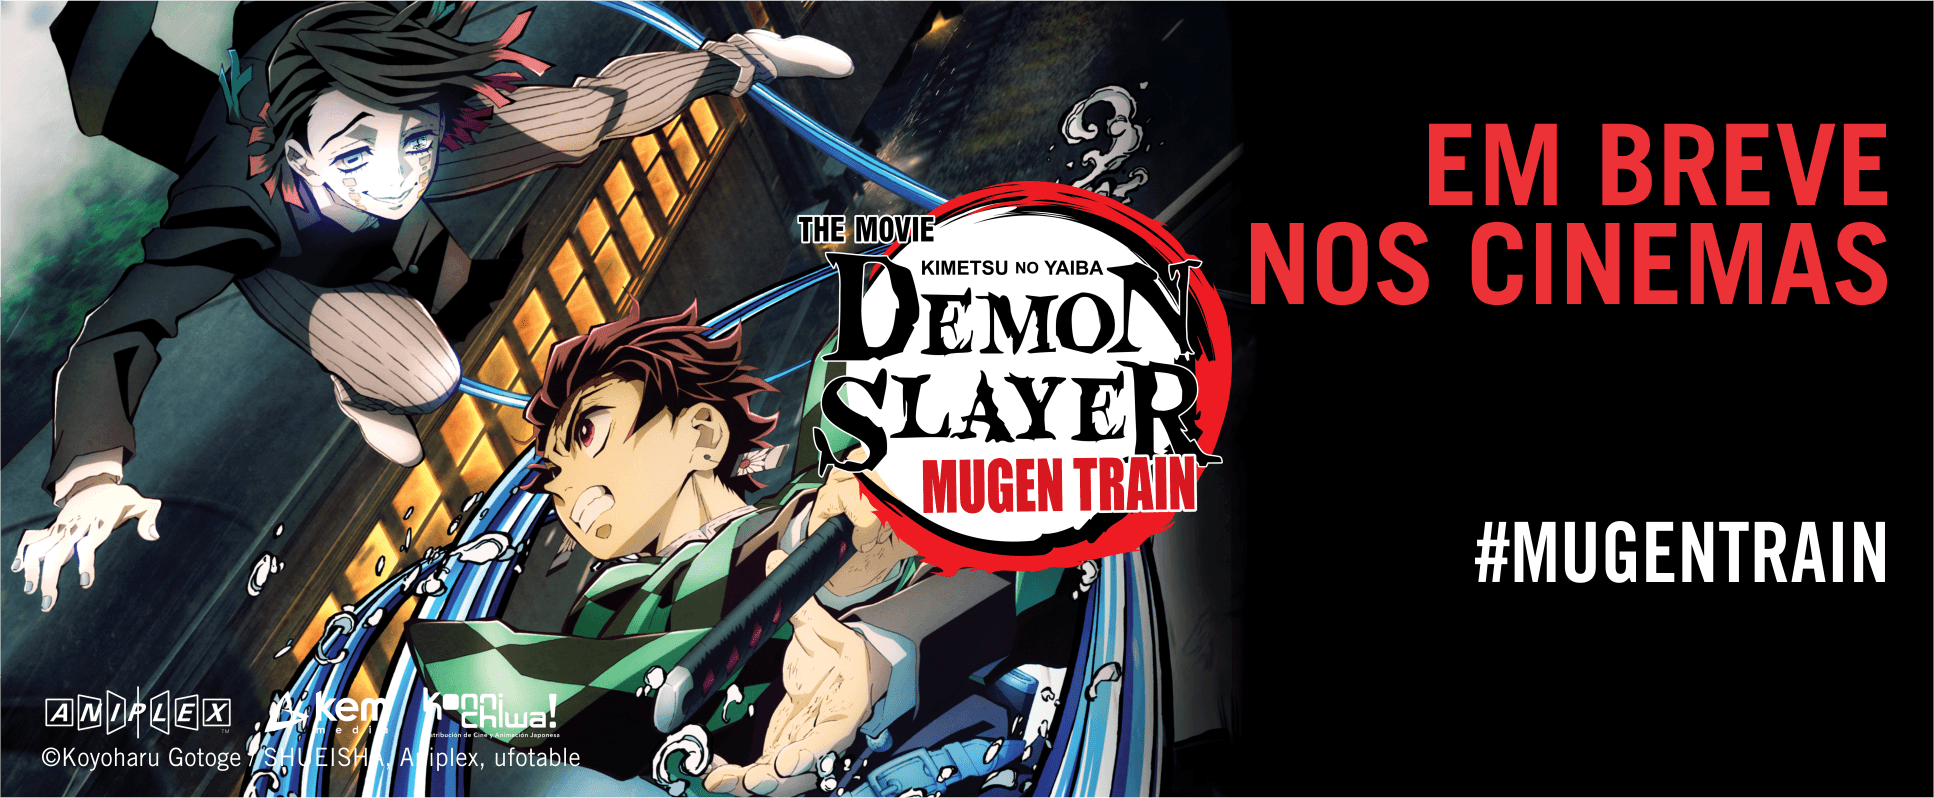 Demon Slayer: Mugen Train' é a maior bilheteria global entre filmes de 2020